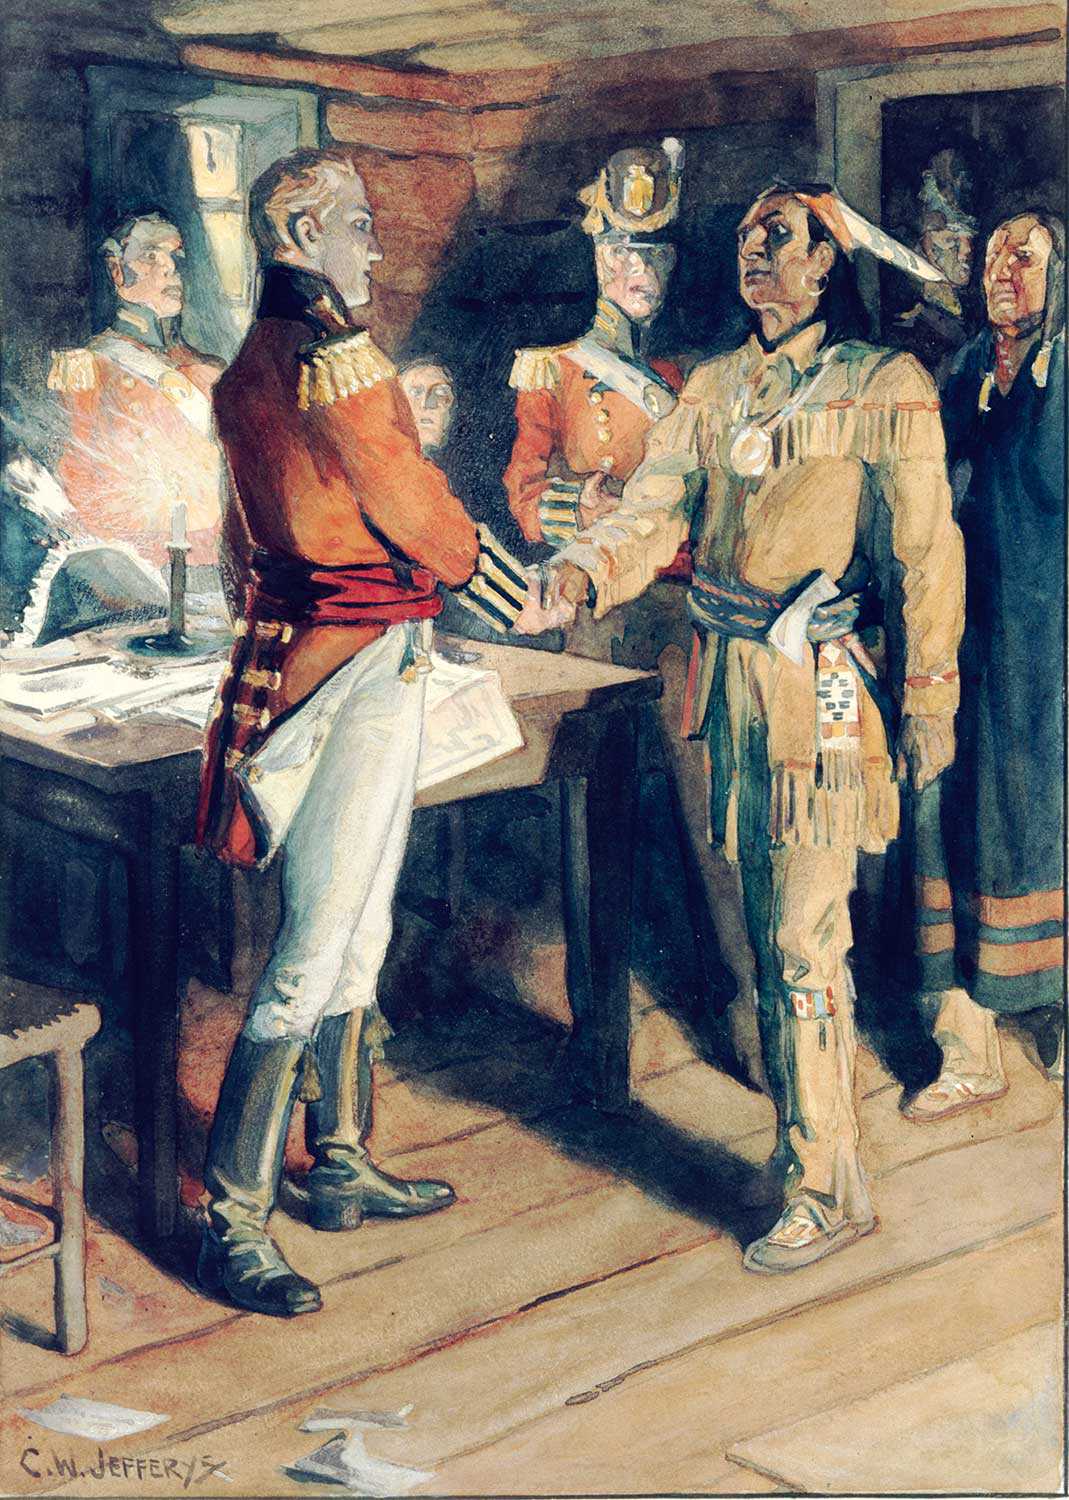 Rencontre de Brock et Tecumseh, 1812, par C.W. Jeffreys, 1869-1951. Bibliothèque et Archives Canada, 1972-26-1360